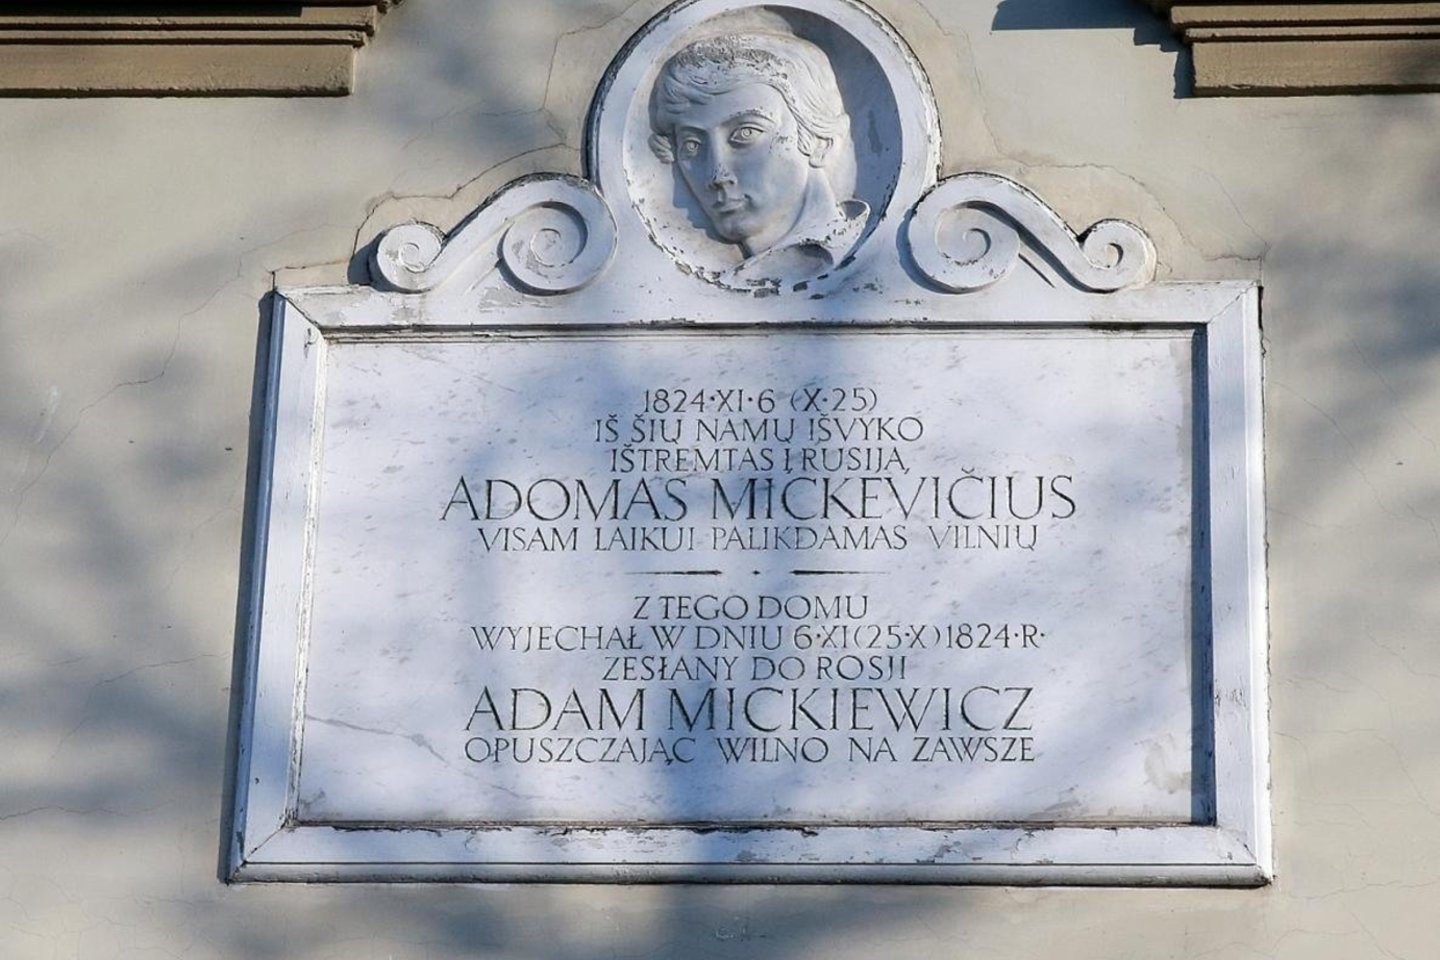  Ant parduoto istorinio pastato – praeityje garsiam poetui A.Mickevičiui skirta paminklinė lenta.<br> R.Danisevičiaus nuotr.